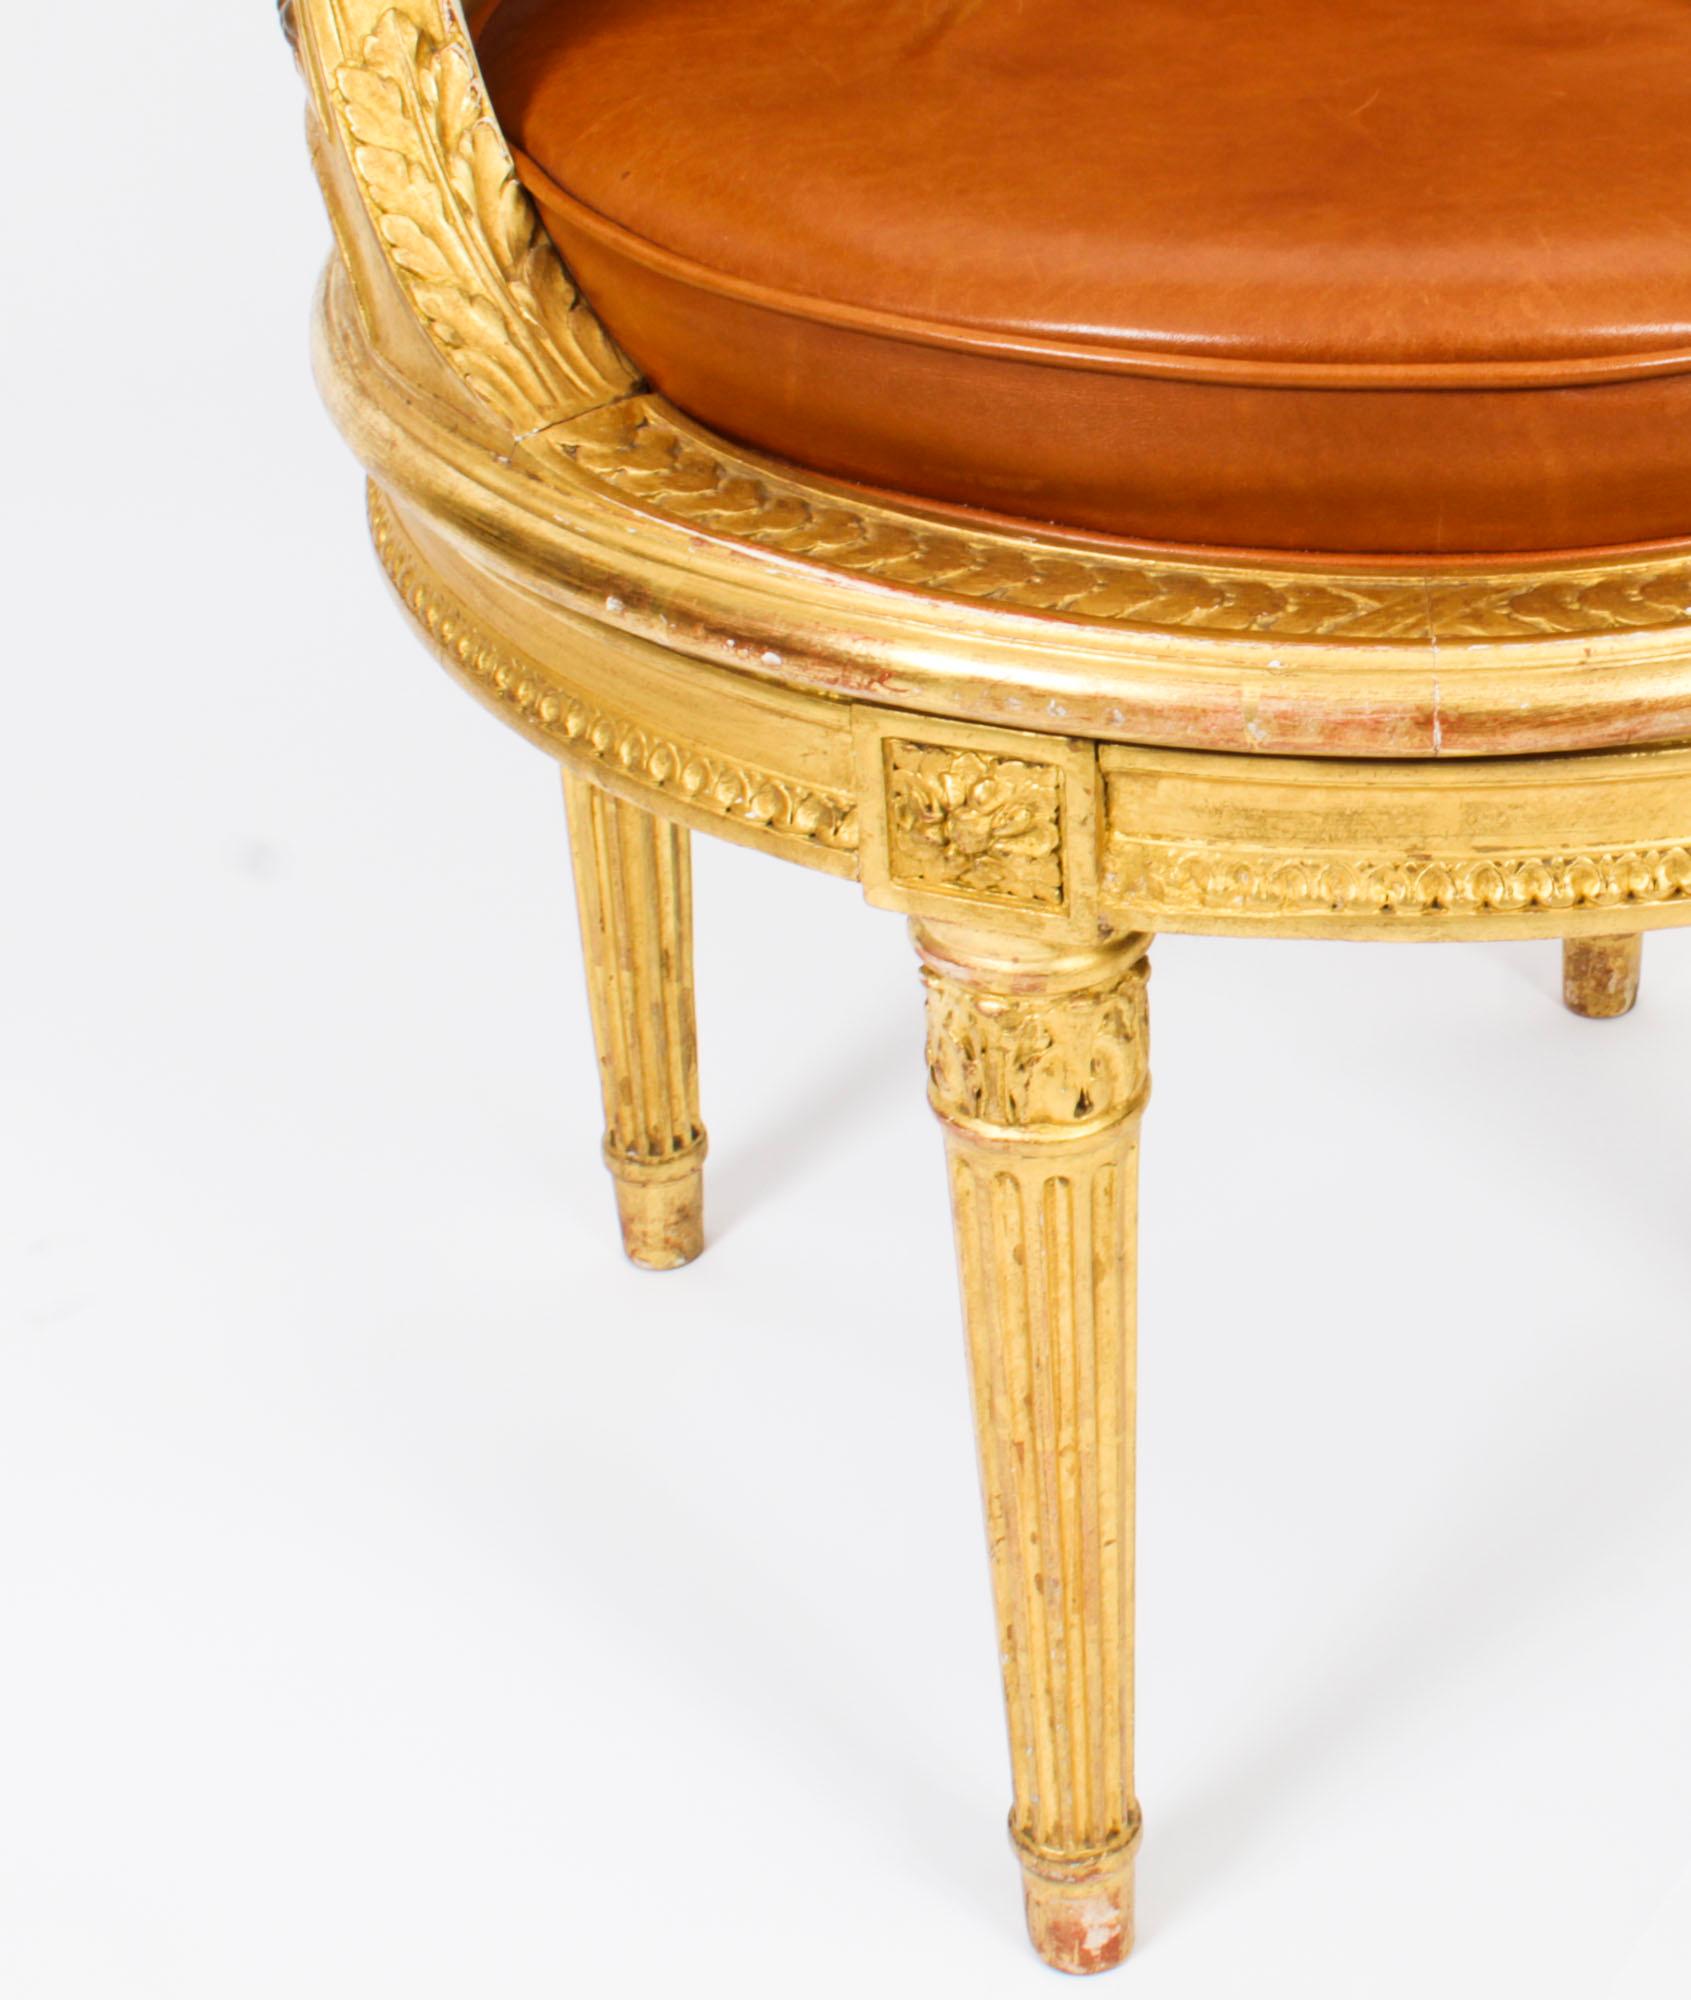 Antique French Louis Revival Revolving Fauteuil de Bureau Desk Chair 19th C. 2